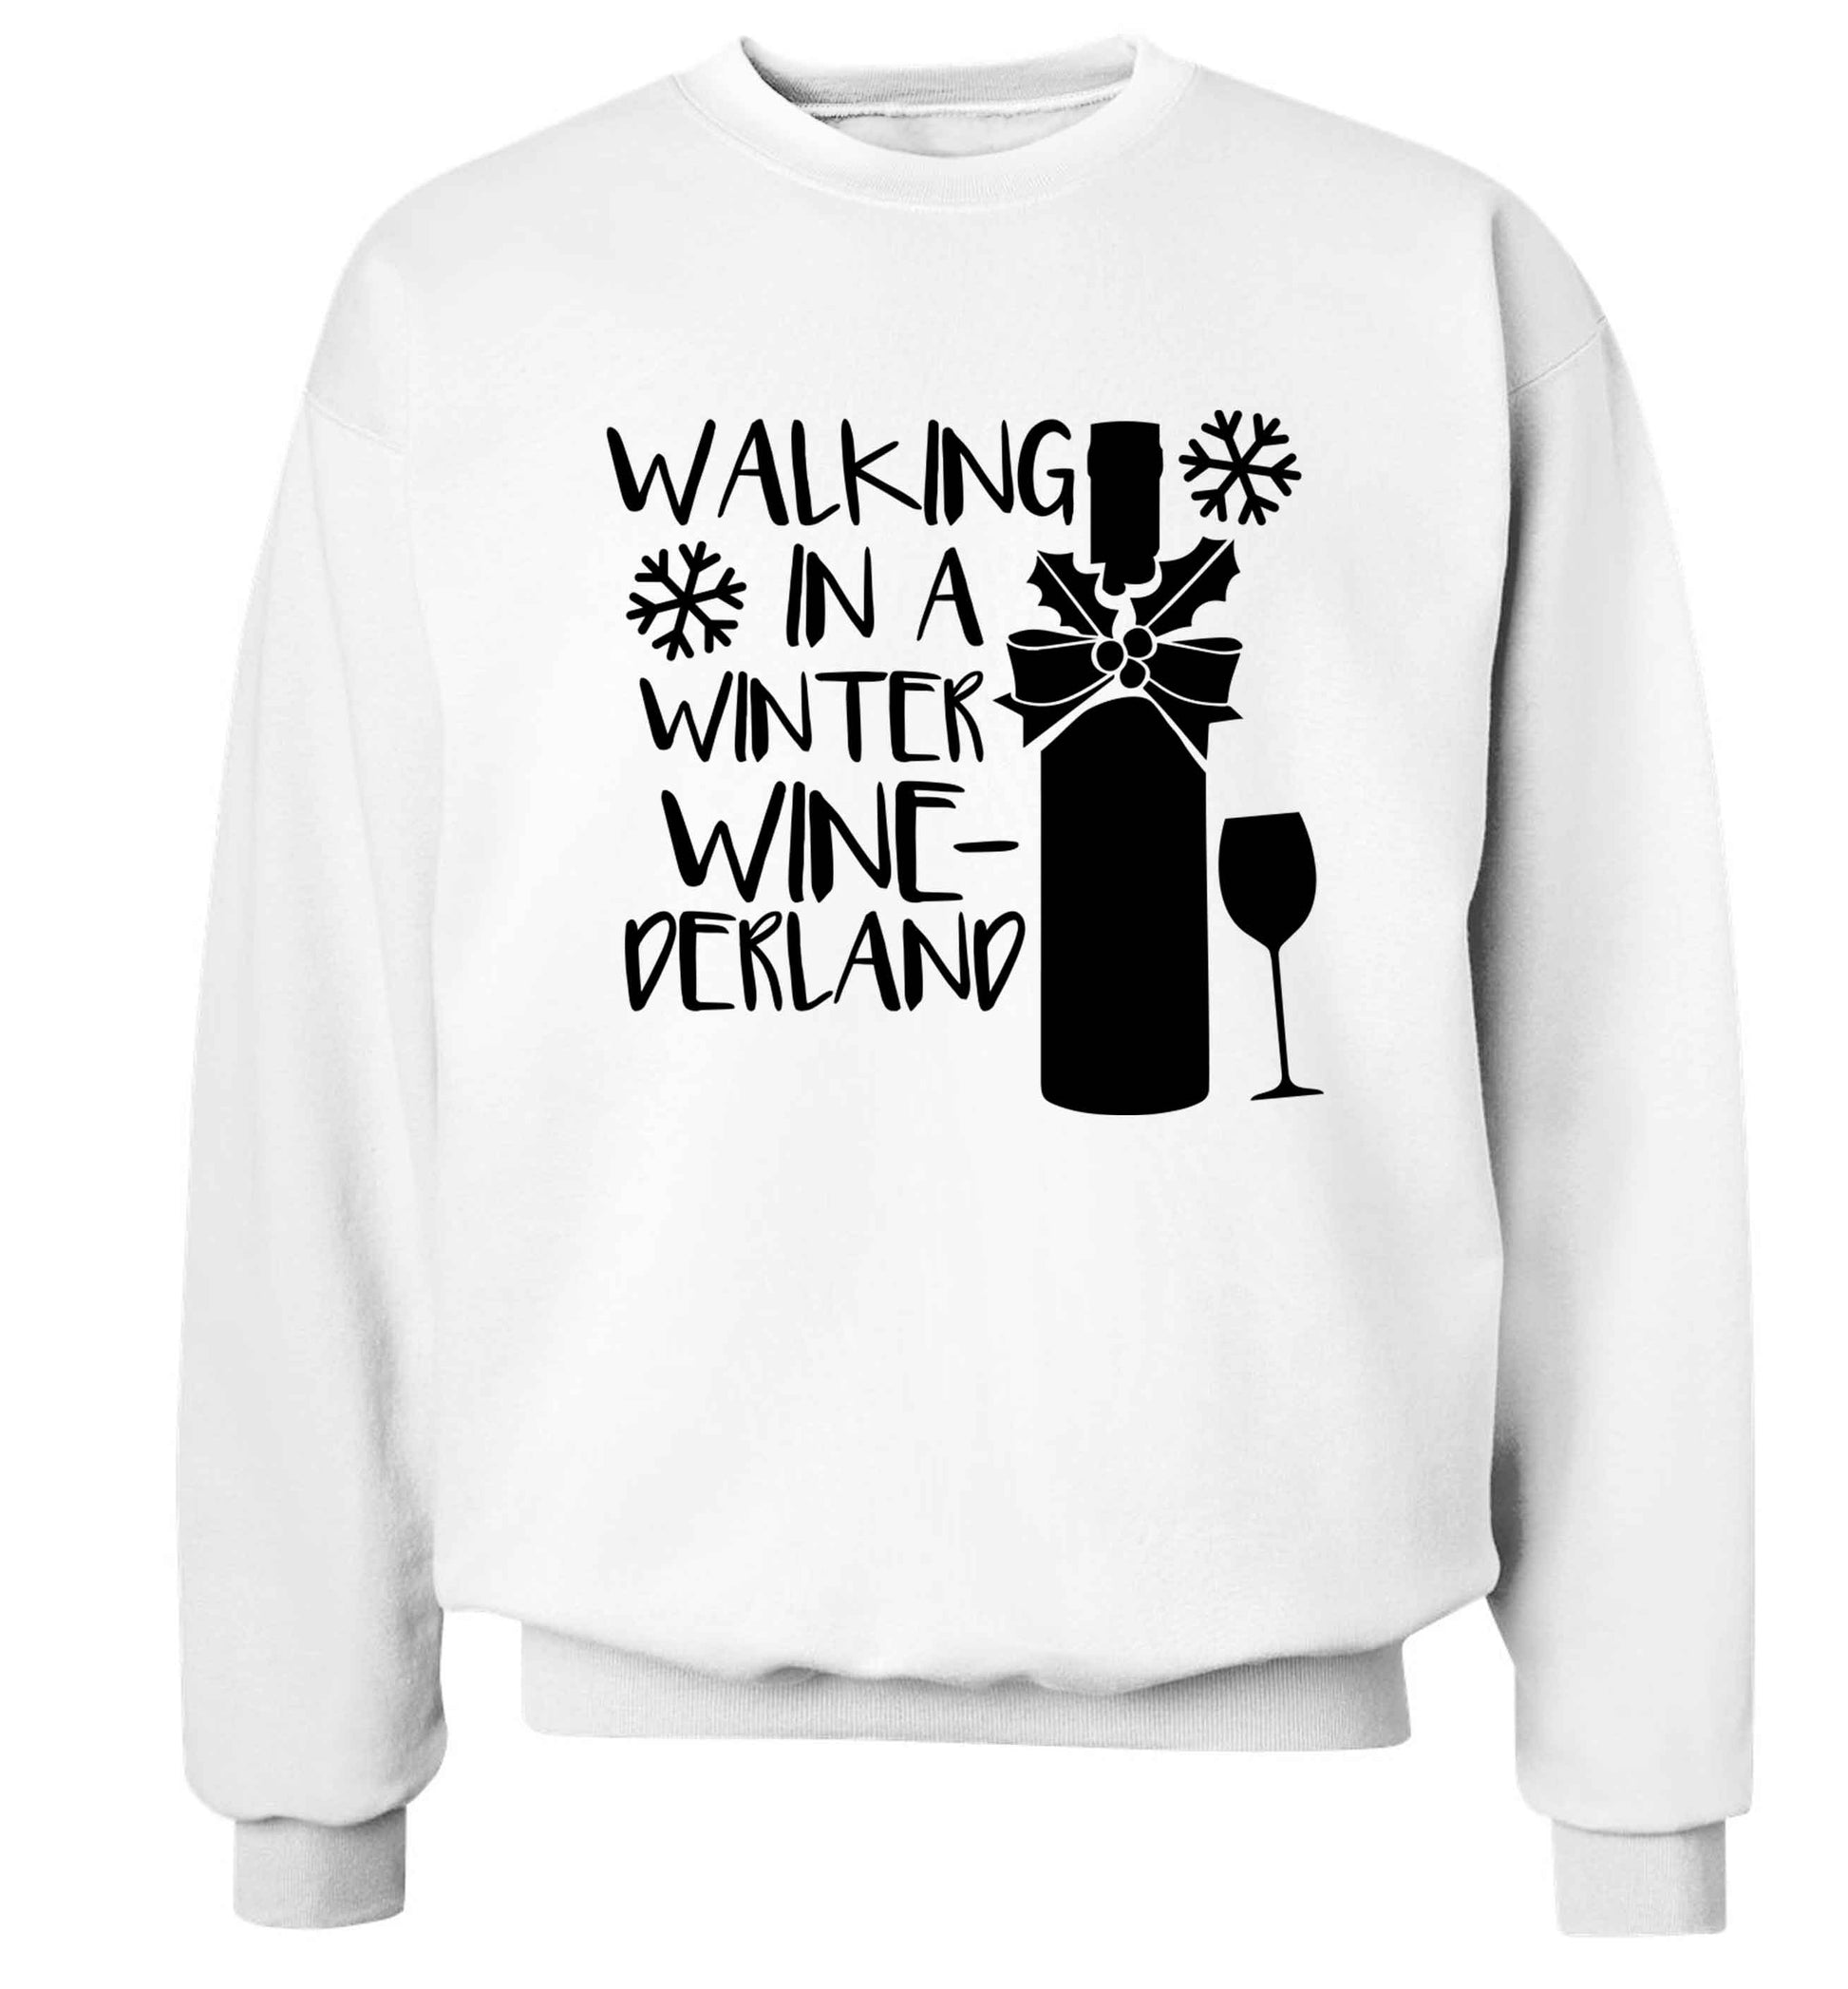 Walking in a wine-derwonderland Adult's unisex white Sweater 2XL